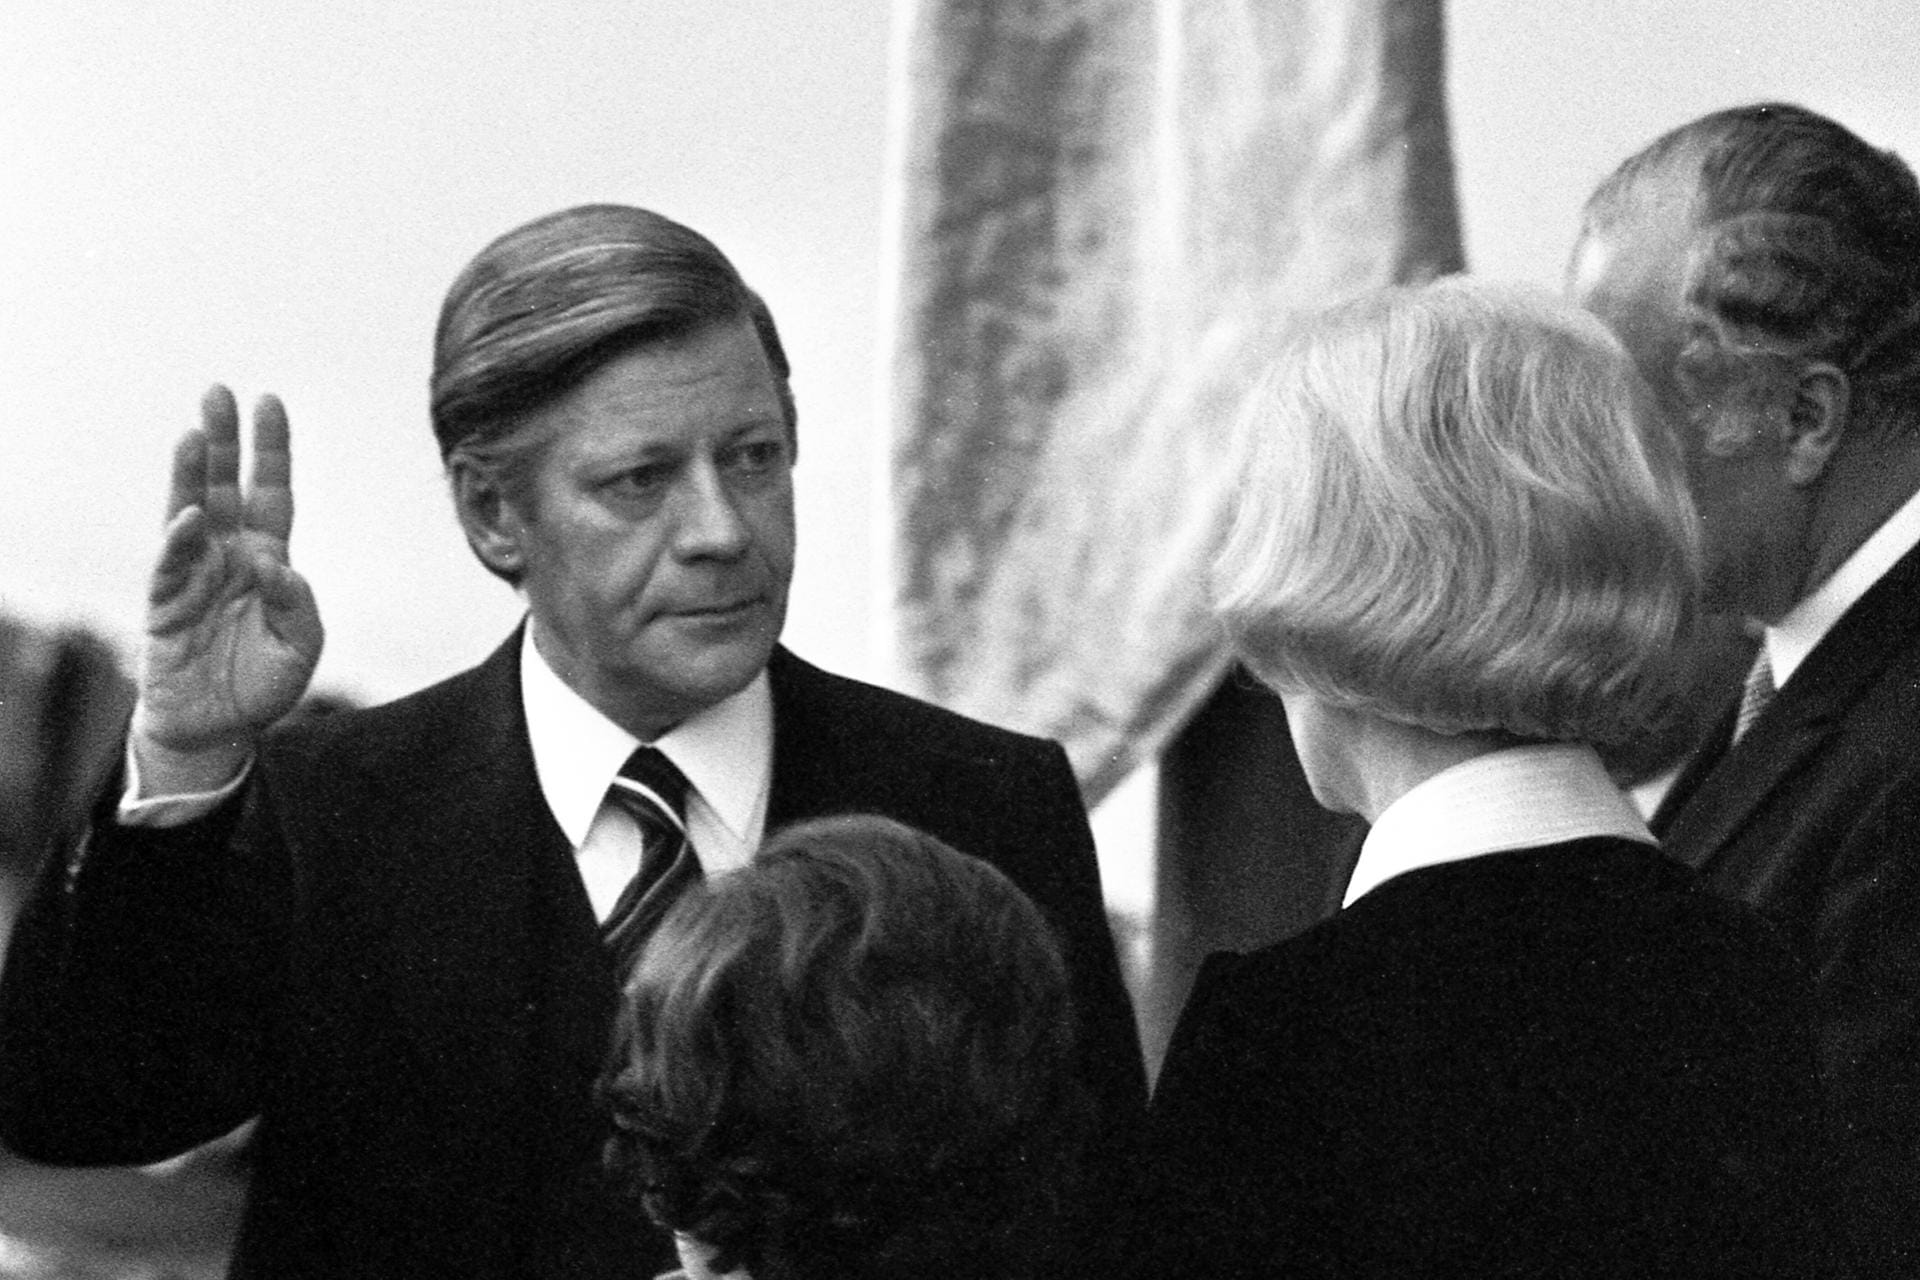 Nach dem Rücktritt Willy Brandts vom Amt des Bundeskanzlers wurde Helmut Schmidt sein Nachfolger. Am 16.05.1974 leistete er im Deutschen Bundestag in Bonn seinen Amtseid.